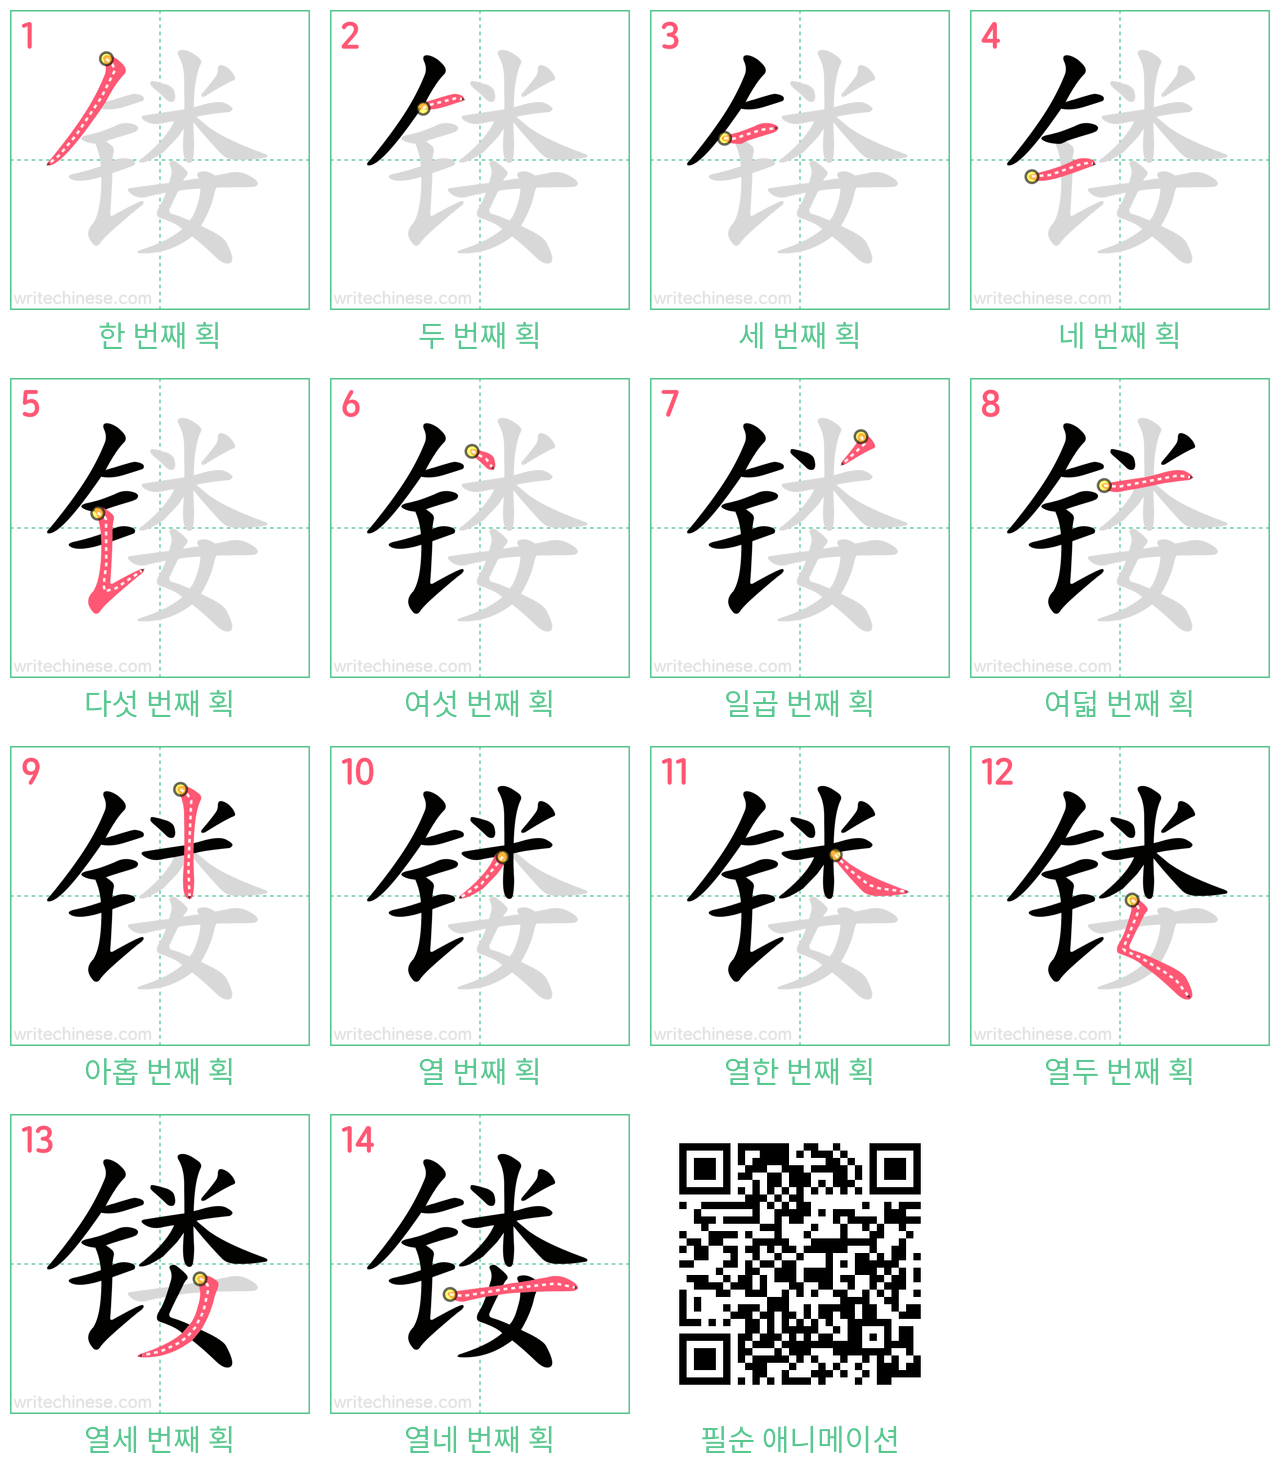 镂 step-by-step stroke order diagrams